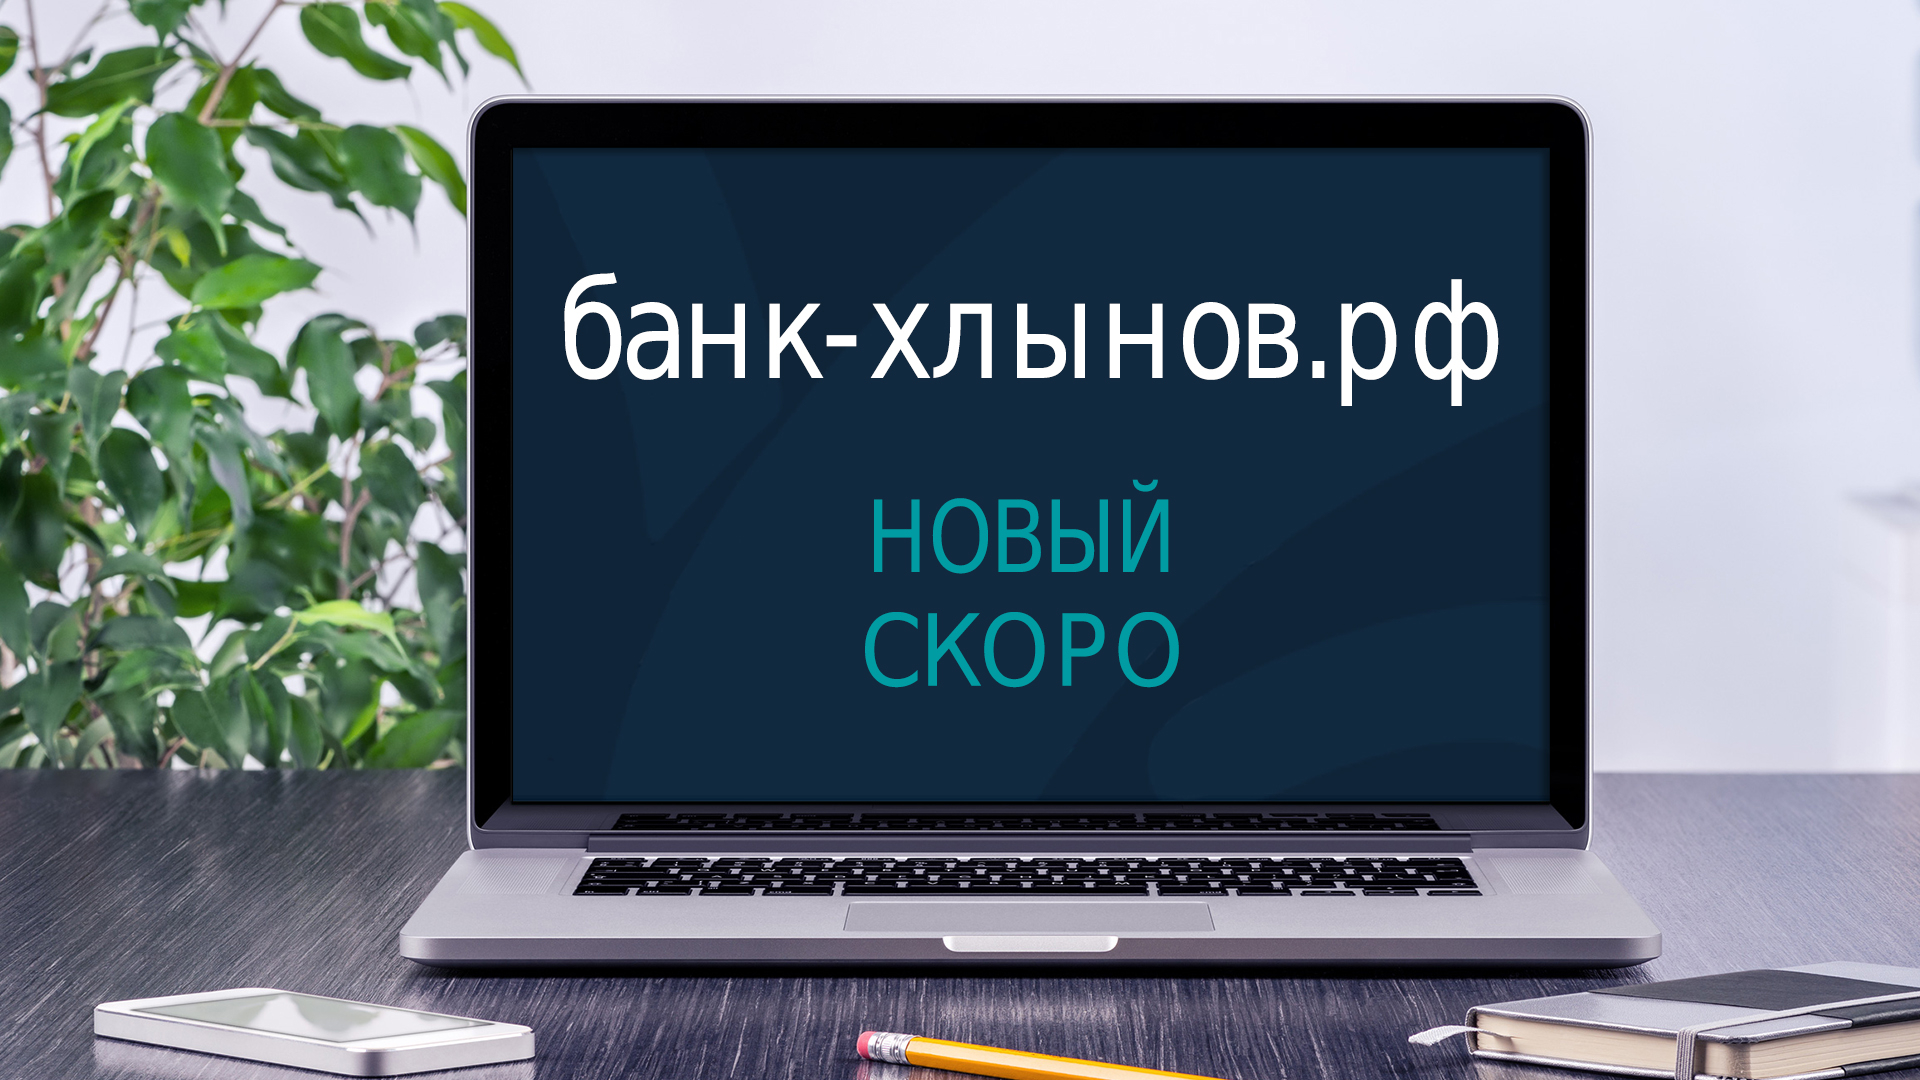 Банк «Хлынов» готовит к запуску новый сайт